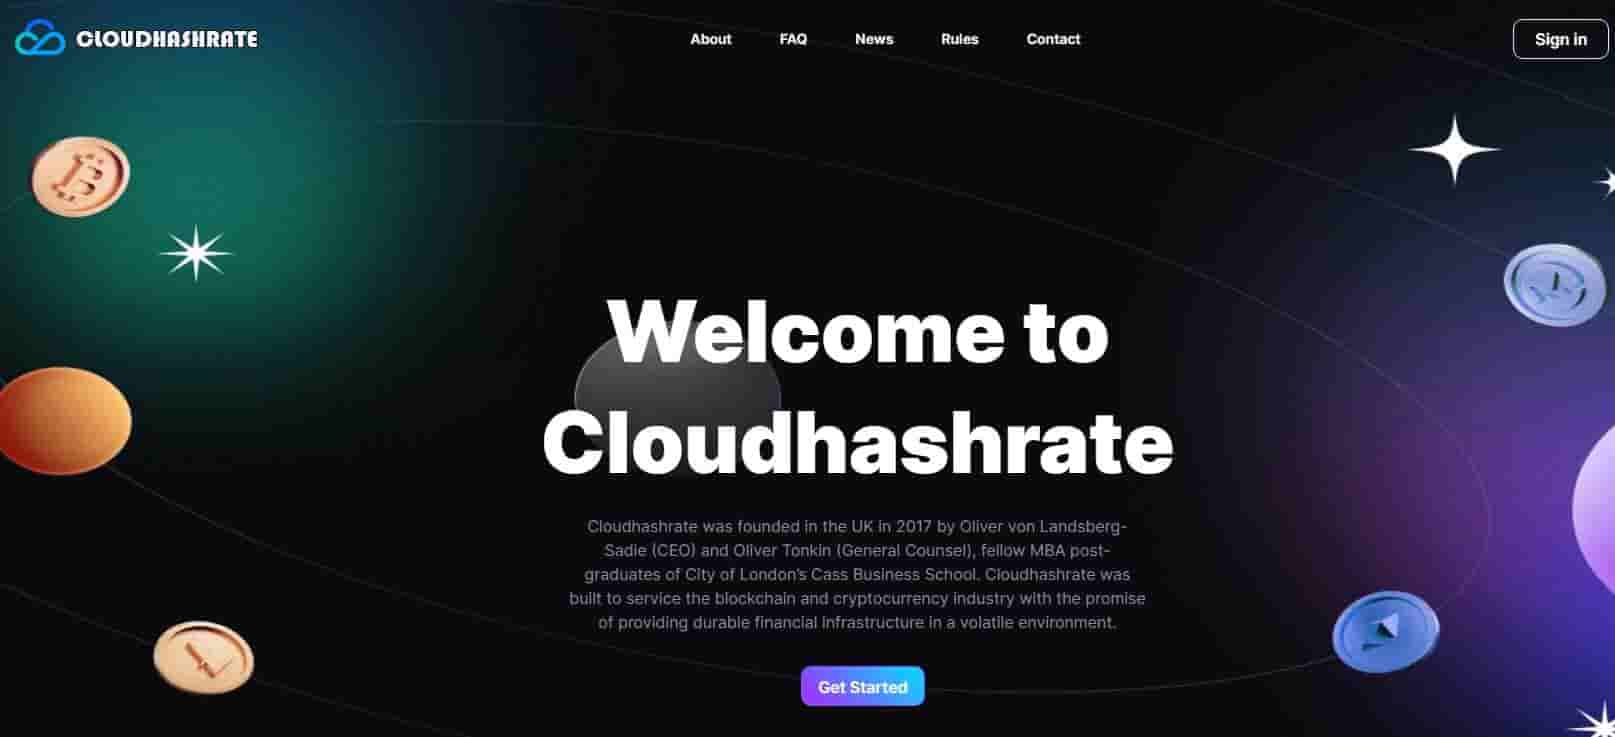 Cloudhashrate